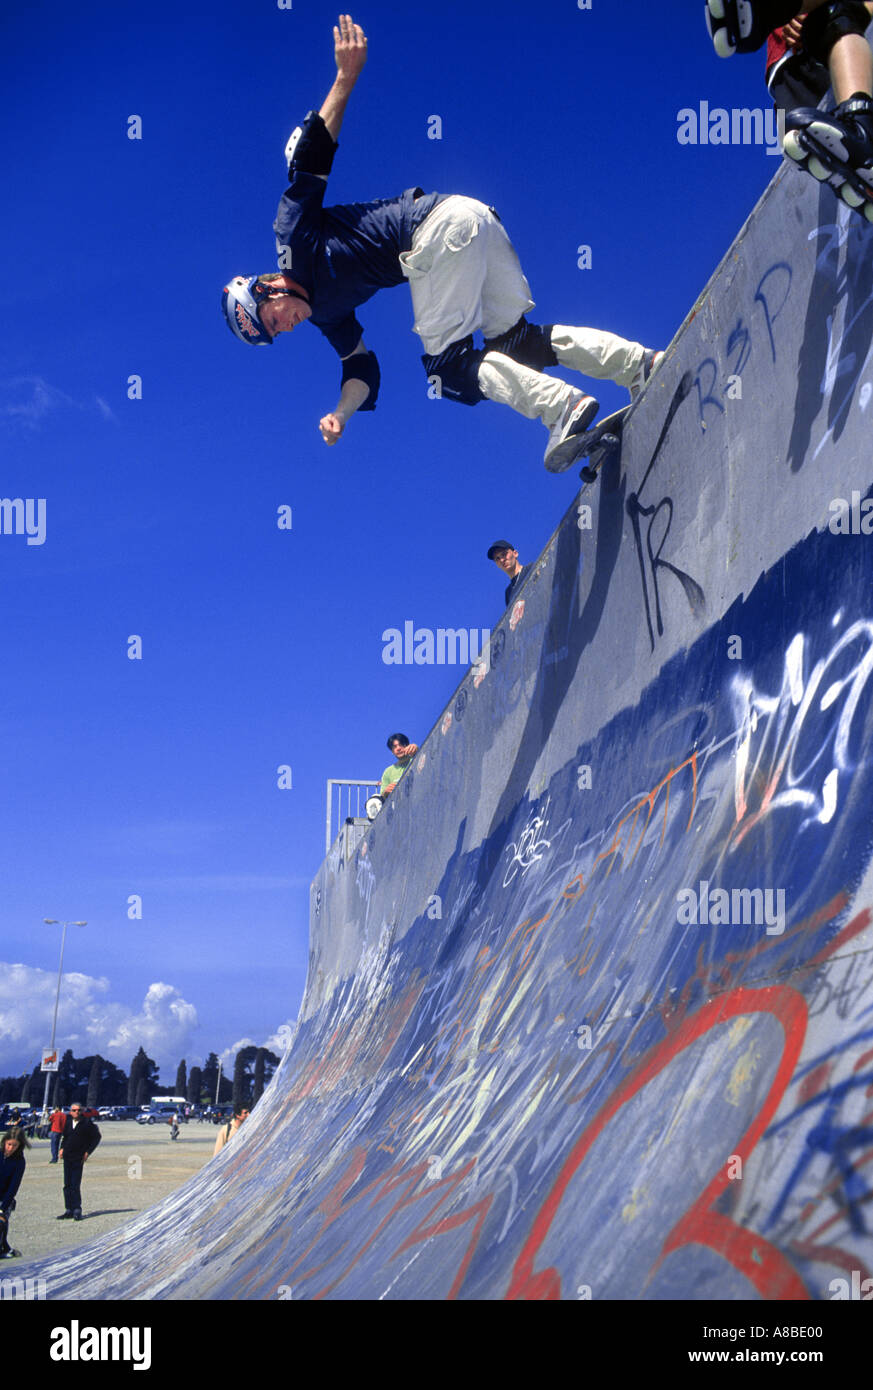 half pipe skateboarding Stock Photo